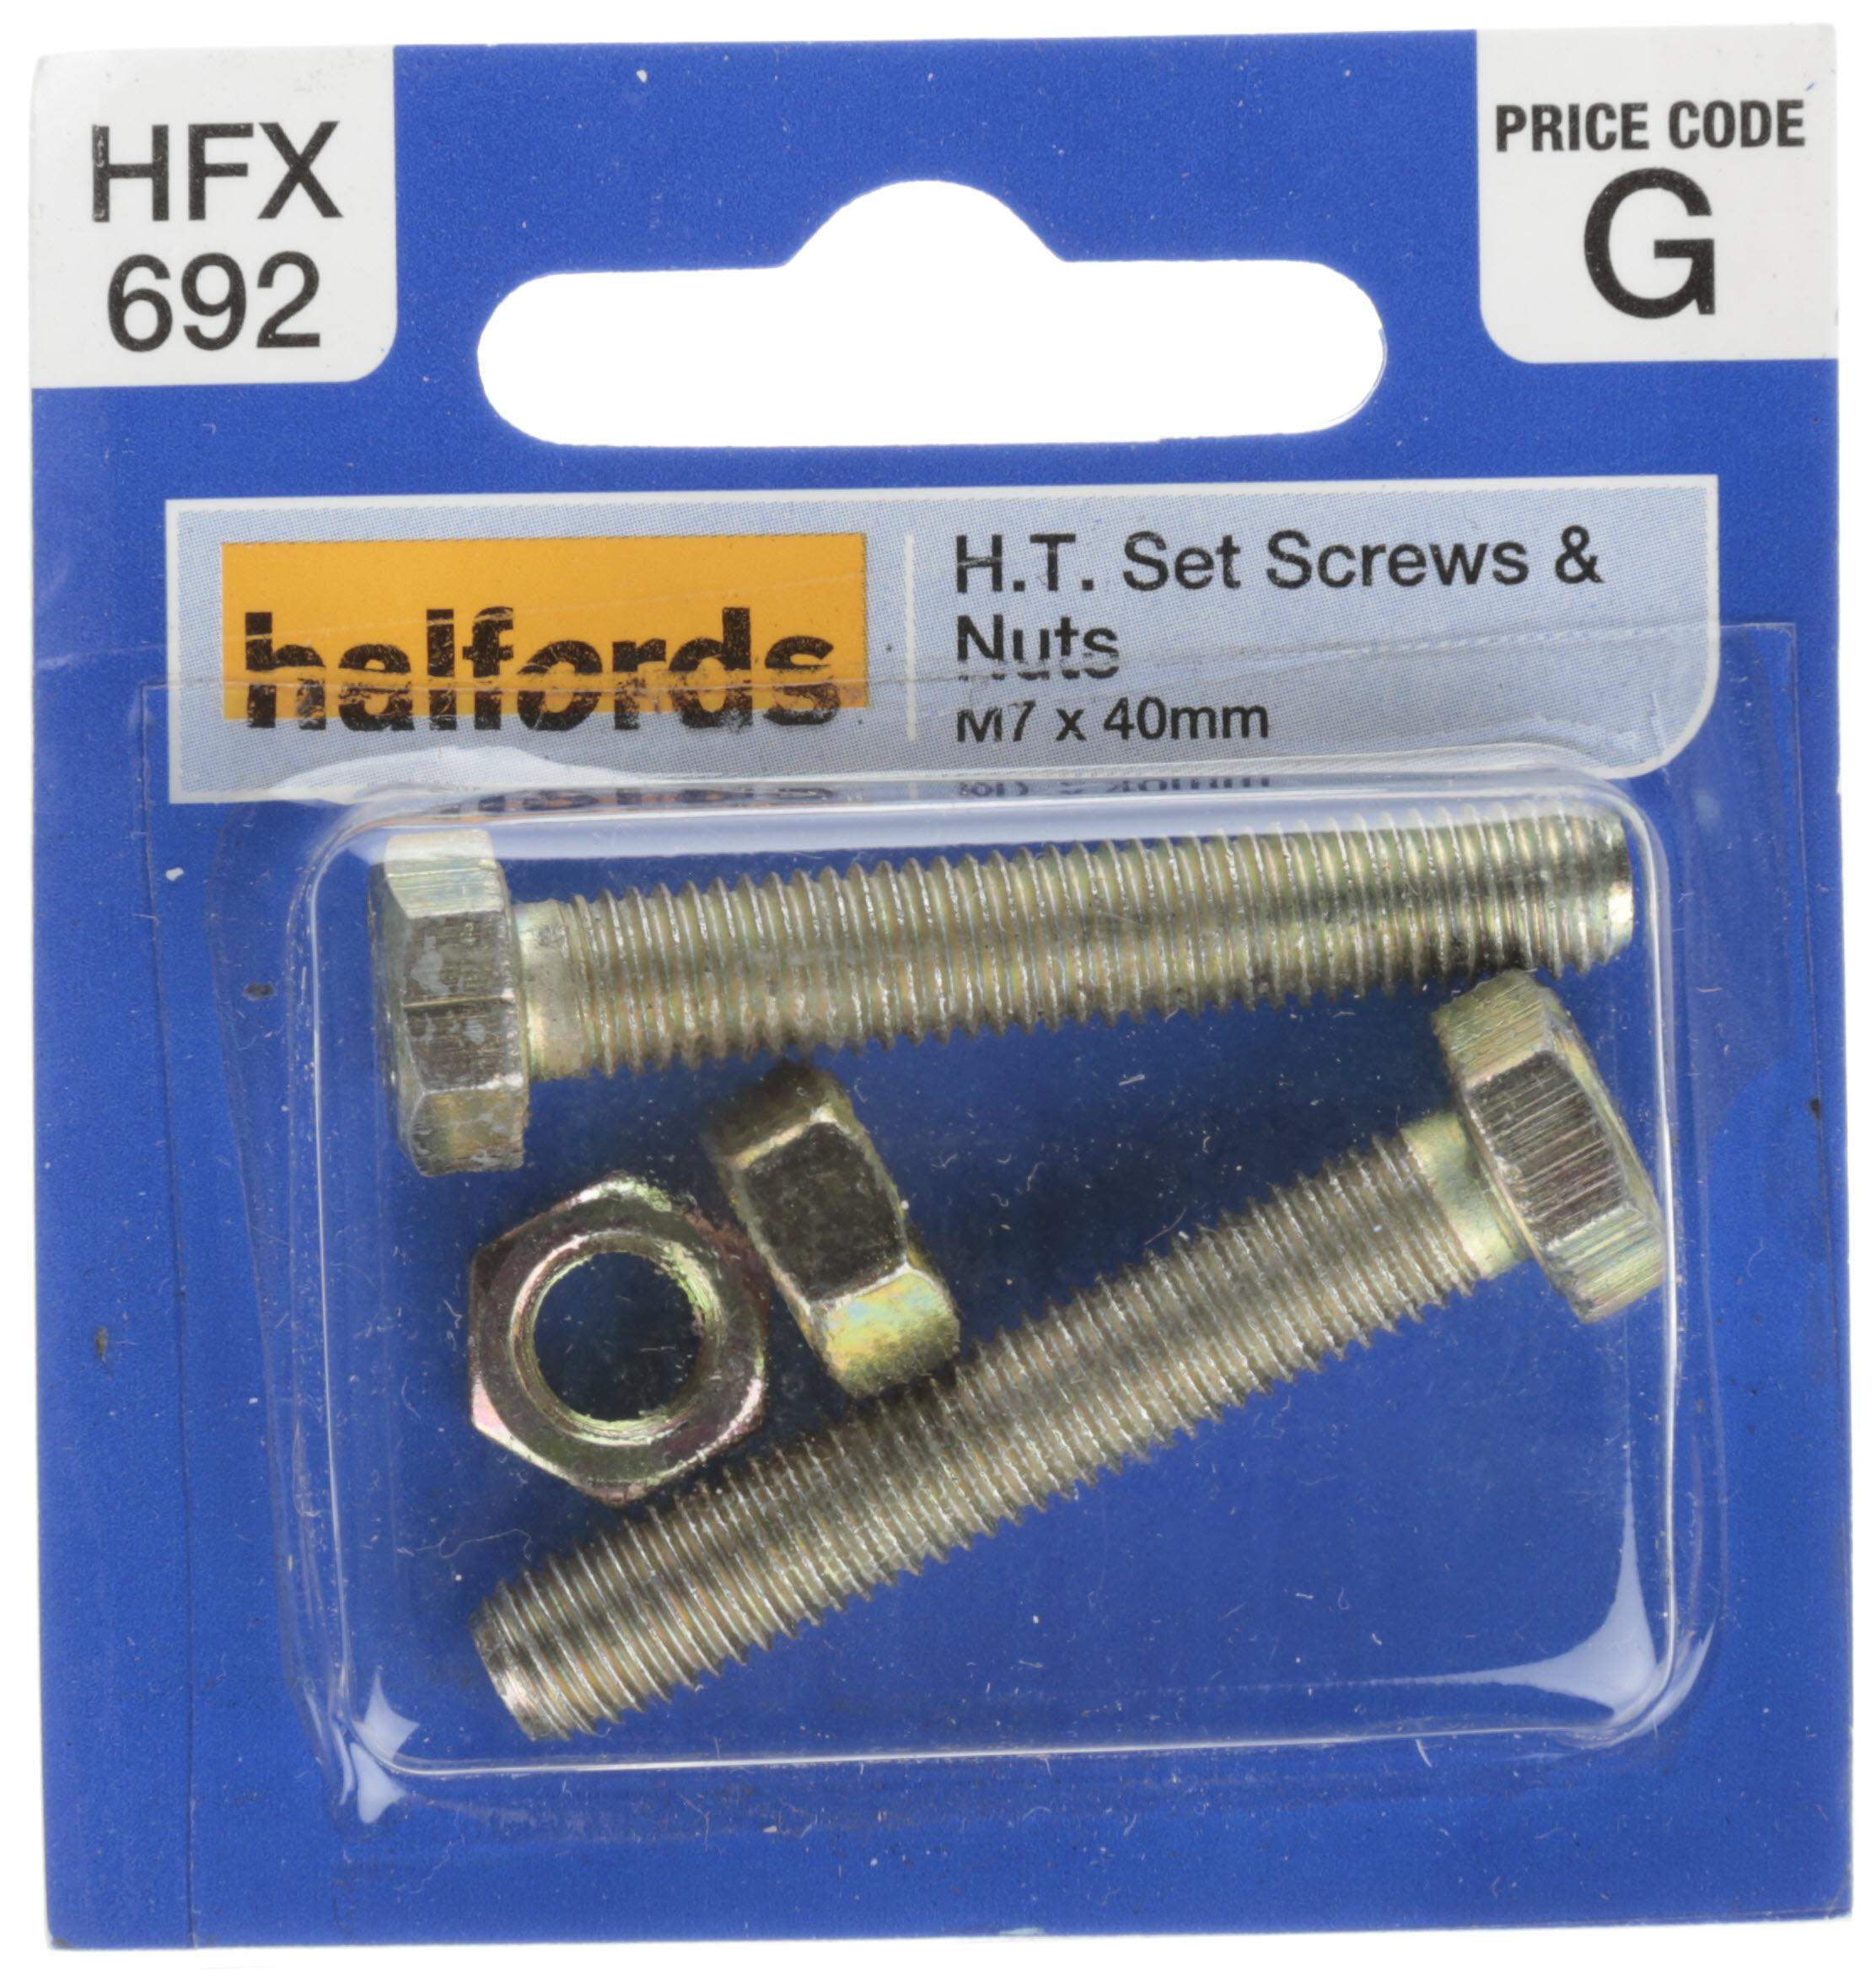 Halfords Set Screws & Nuts M7 X 40Mm (Hfx692)